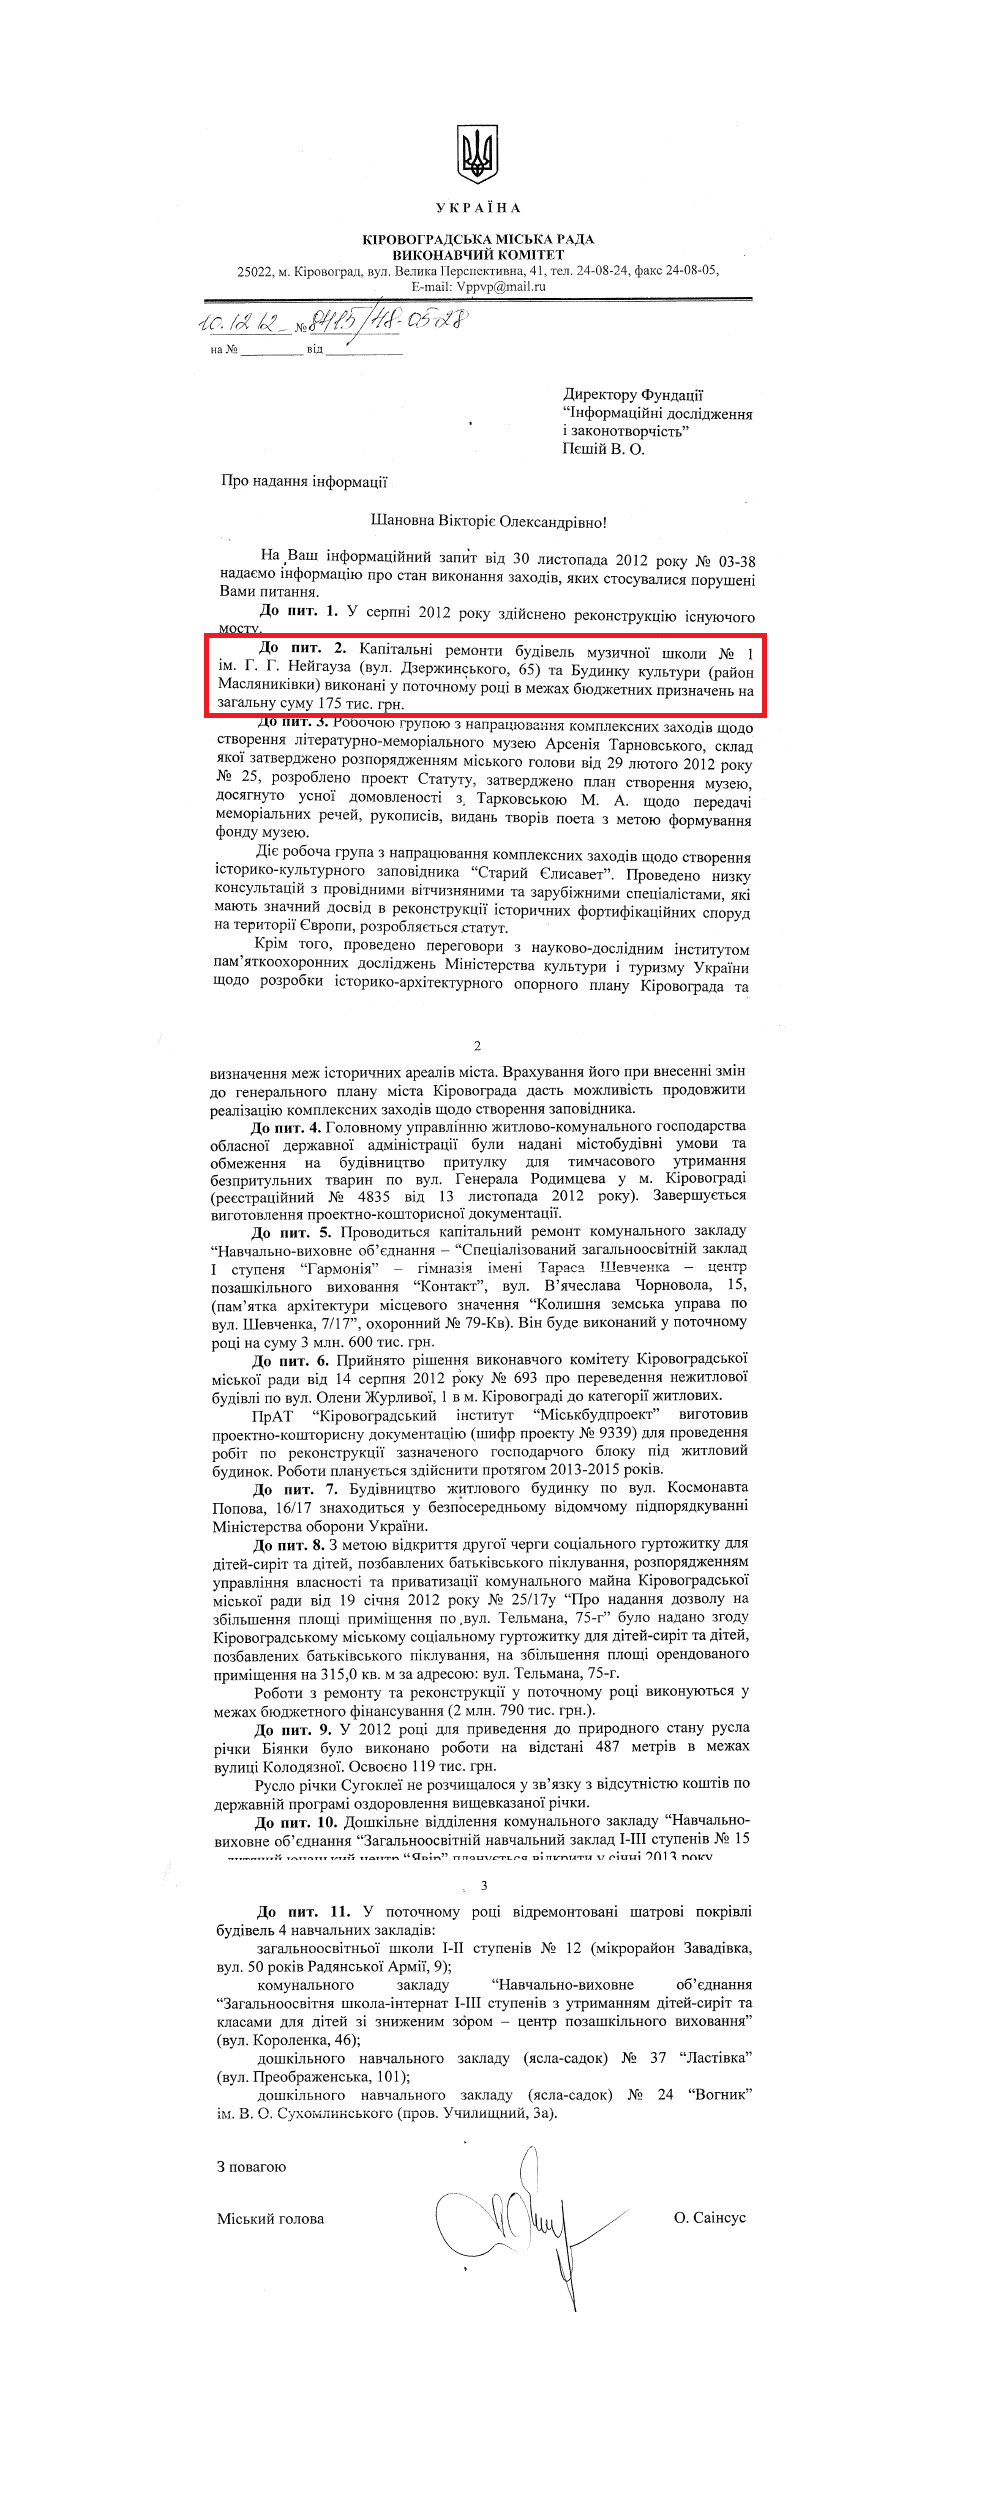 Лист міського голови Кіровограда О. Д. Саінсуса